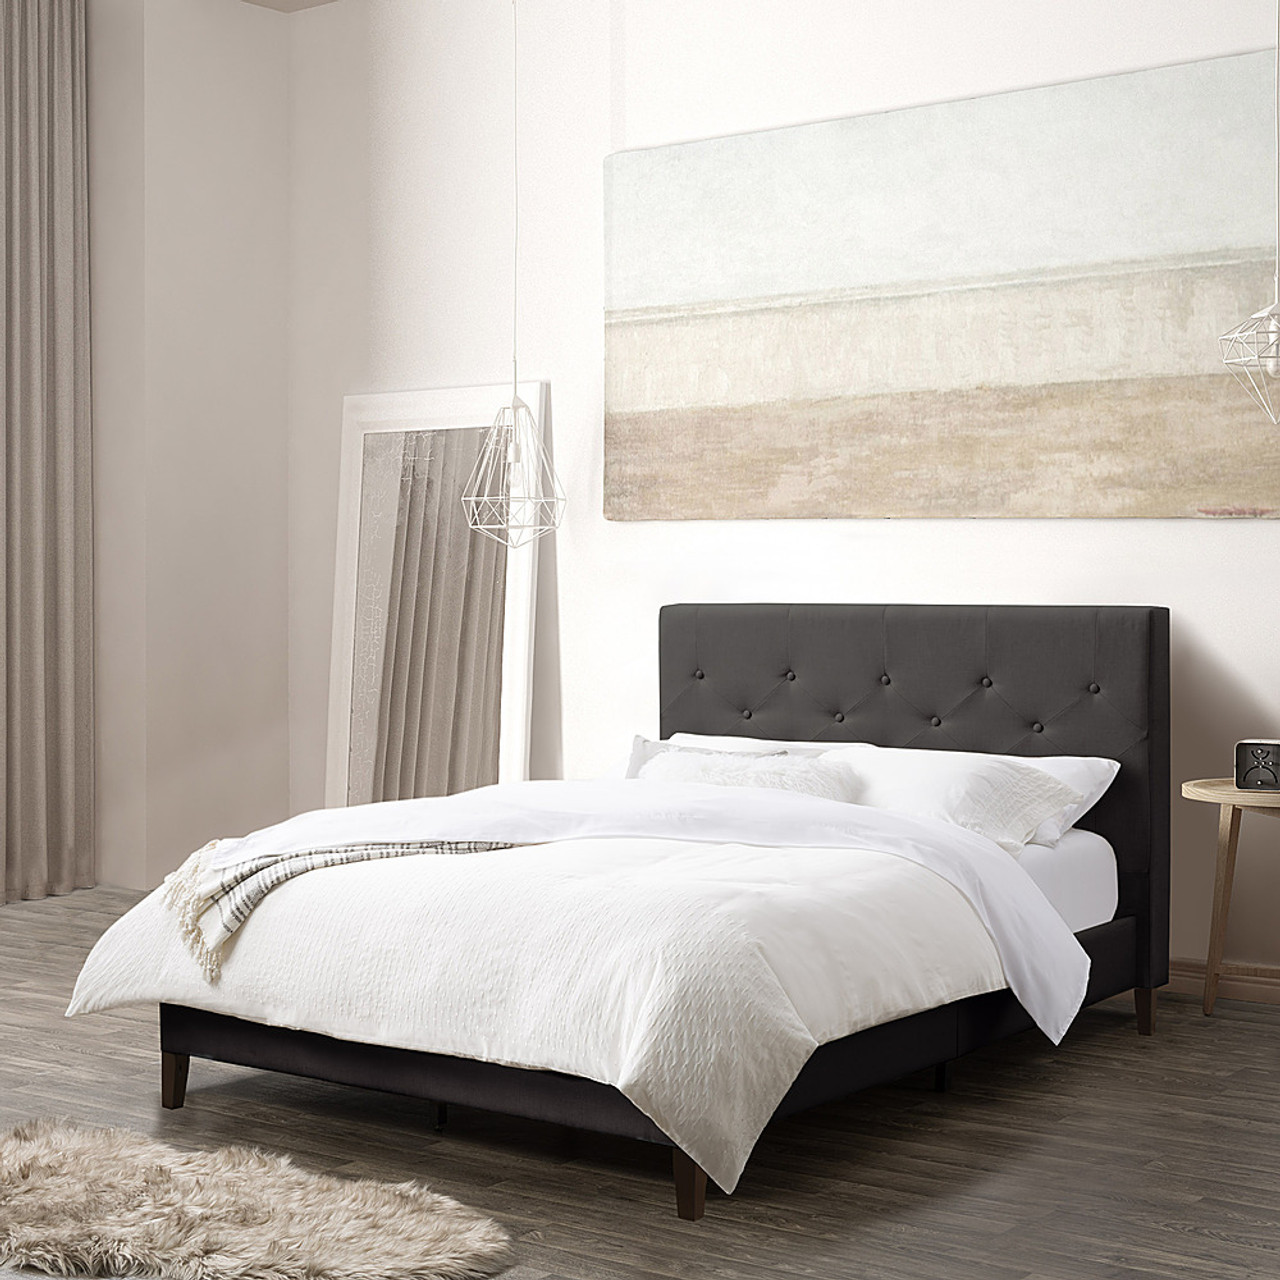 CorLiving - Nova Ridge Tufted Upholstered Bed, Full - Dark Gray